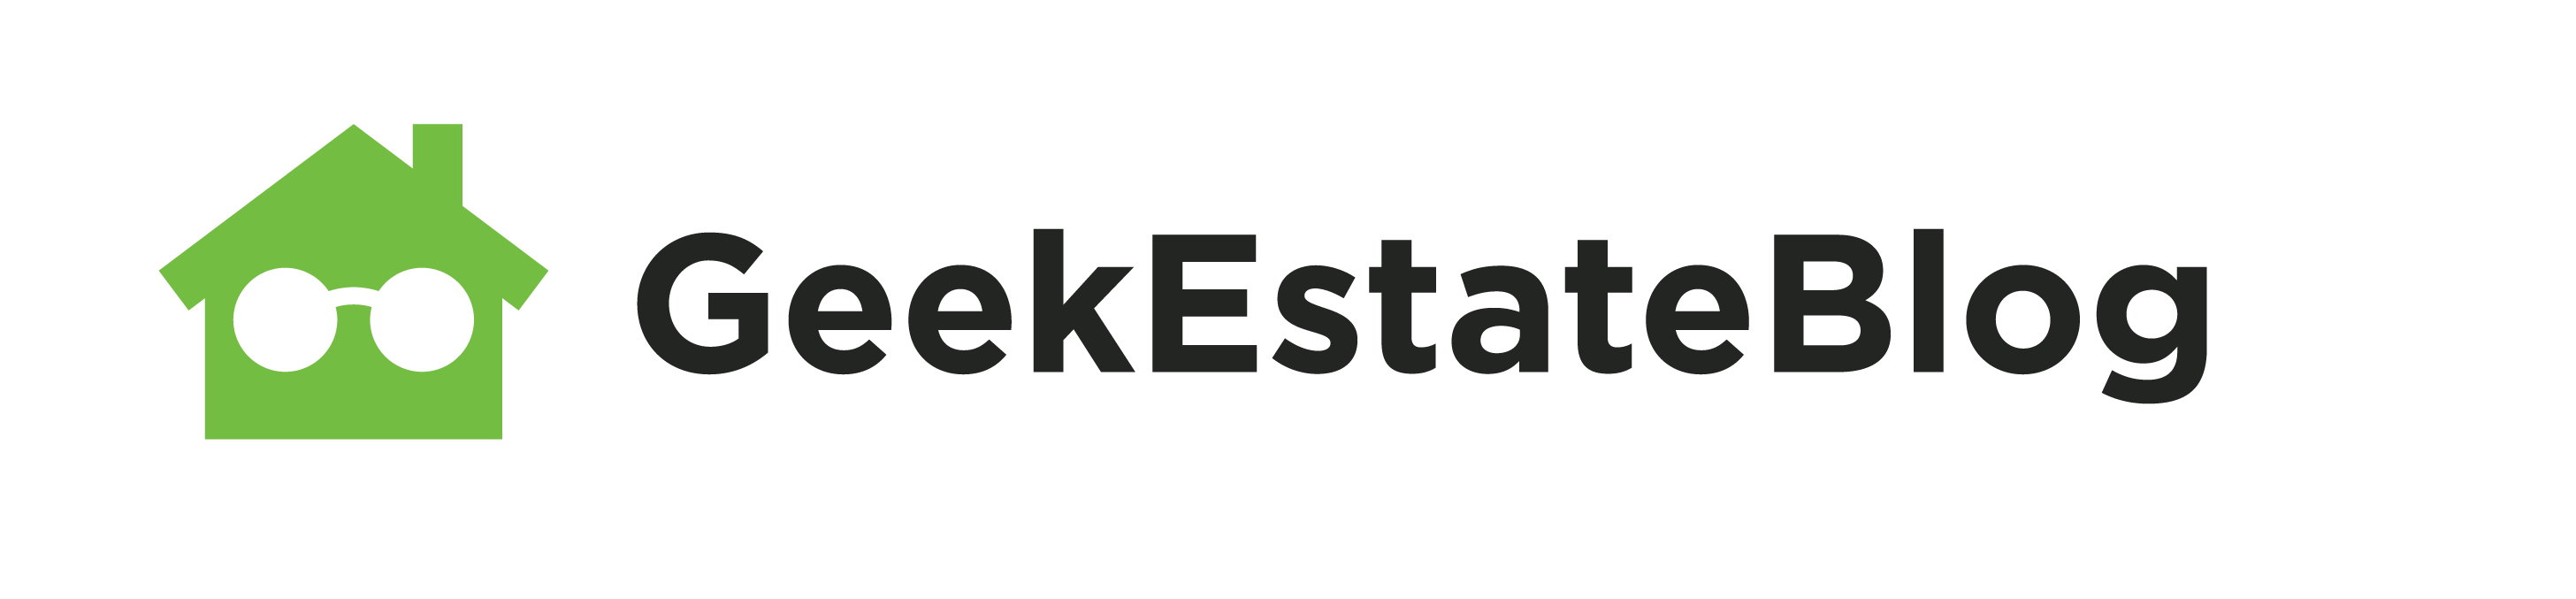 GeekEstate Blog Logo